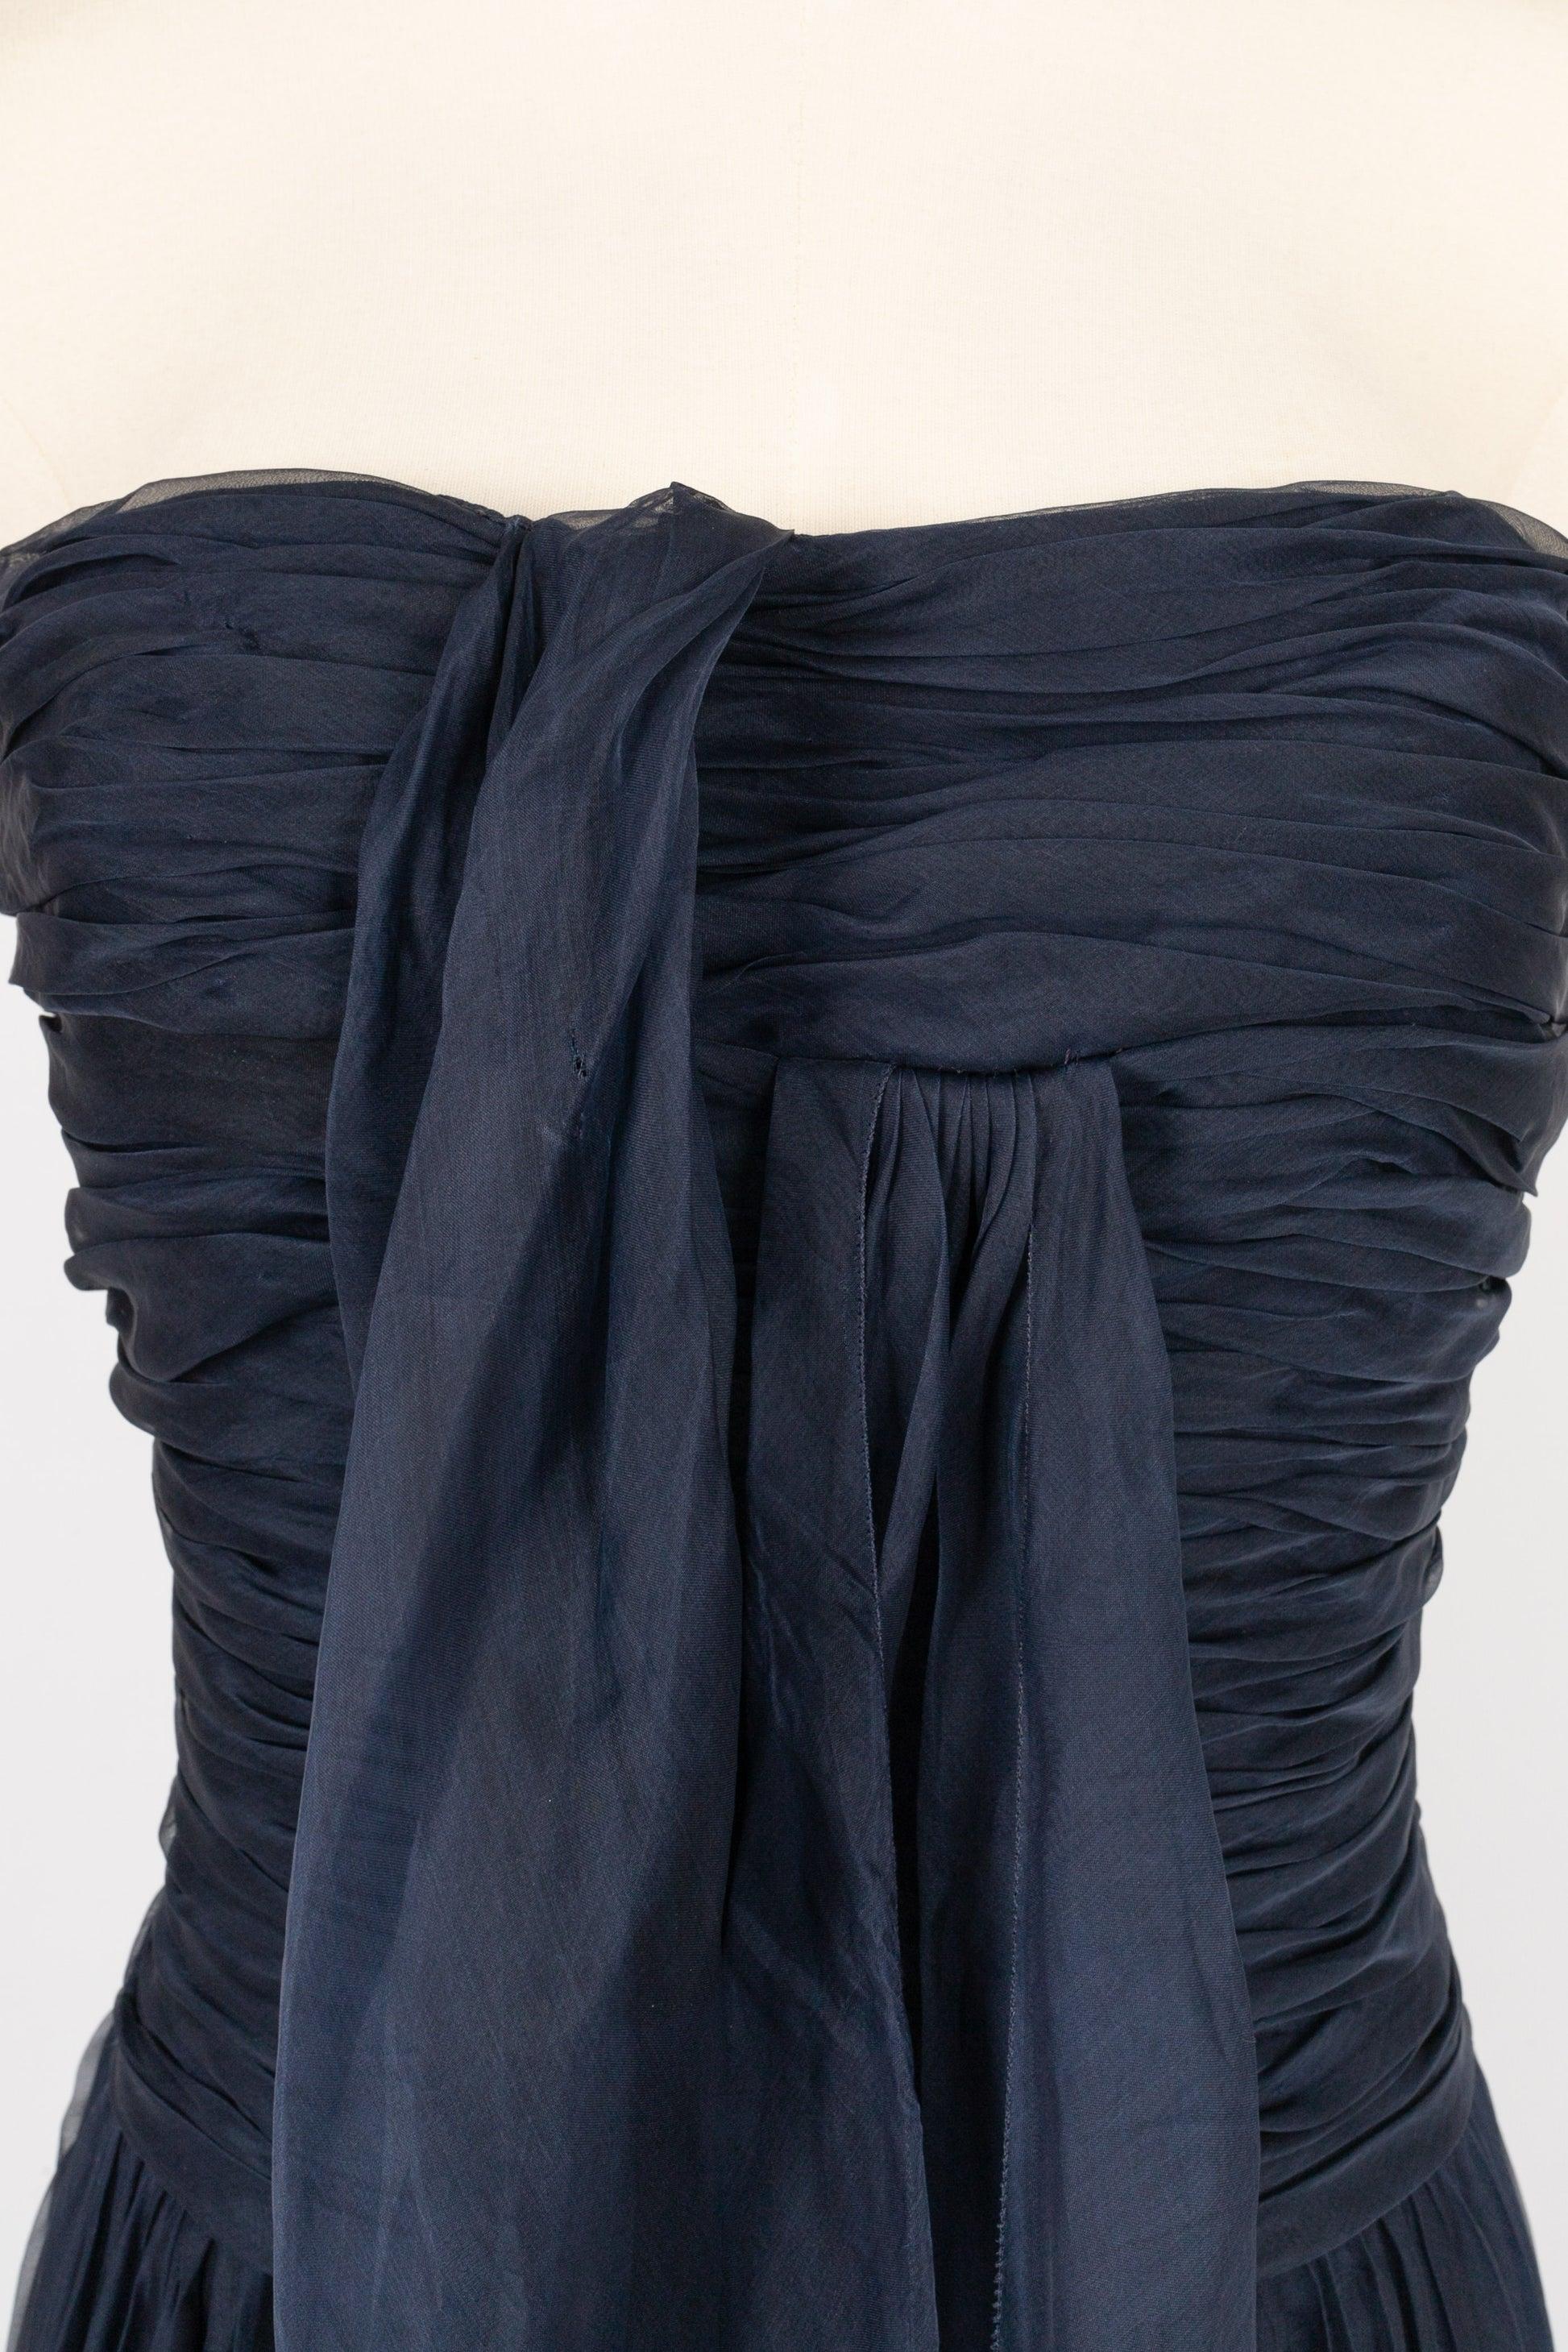 Chanel Long Bustier Dress in Navy Blue Pleated Silk Taffeta For Sale 1